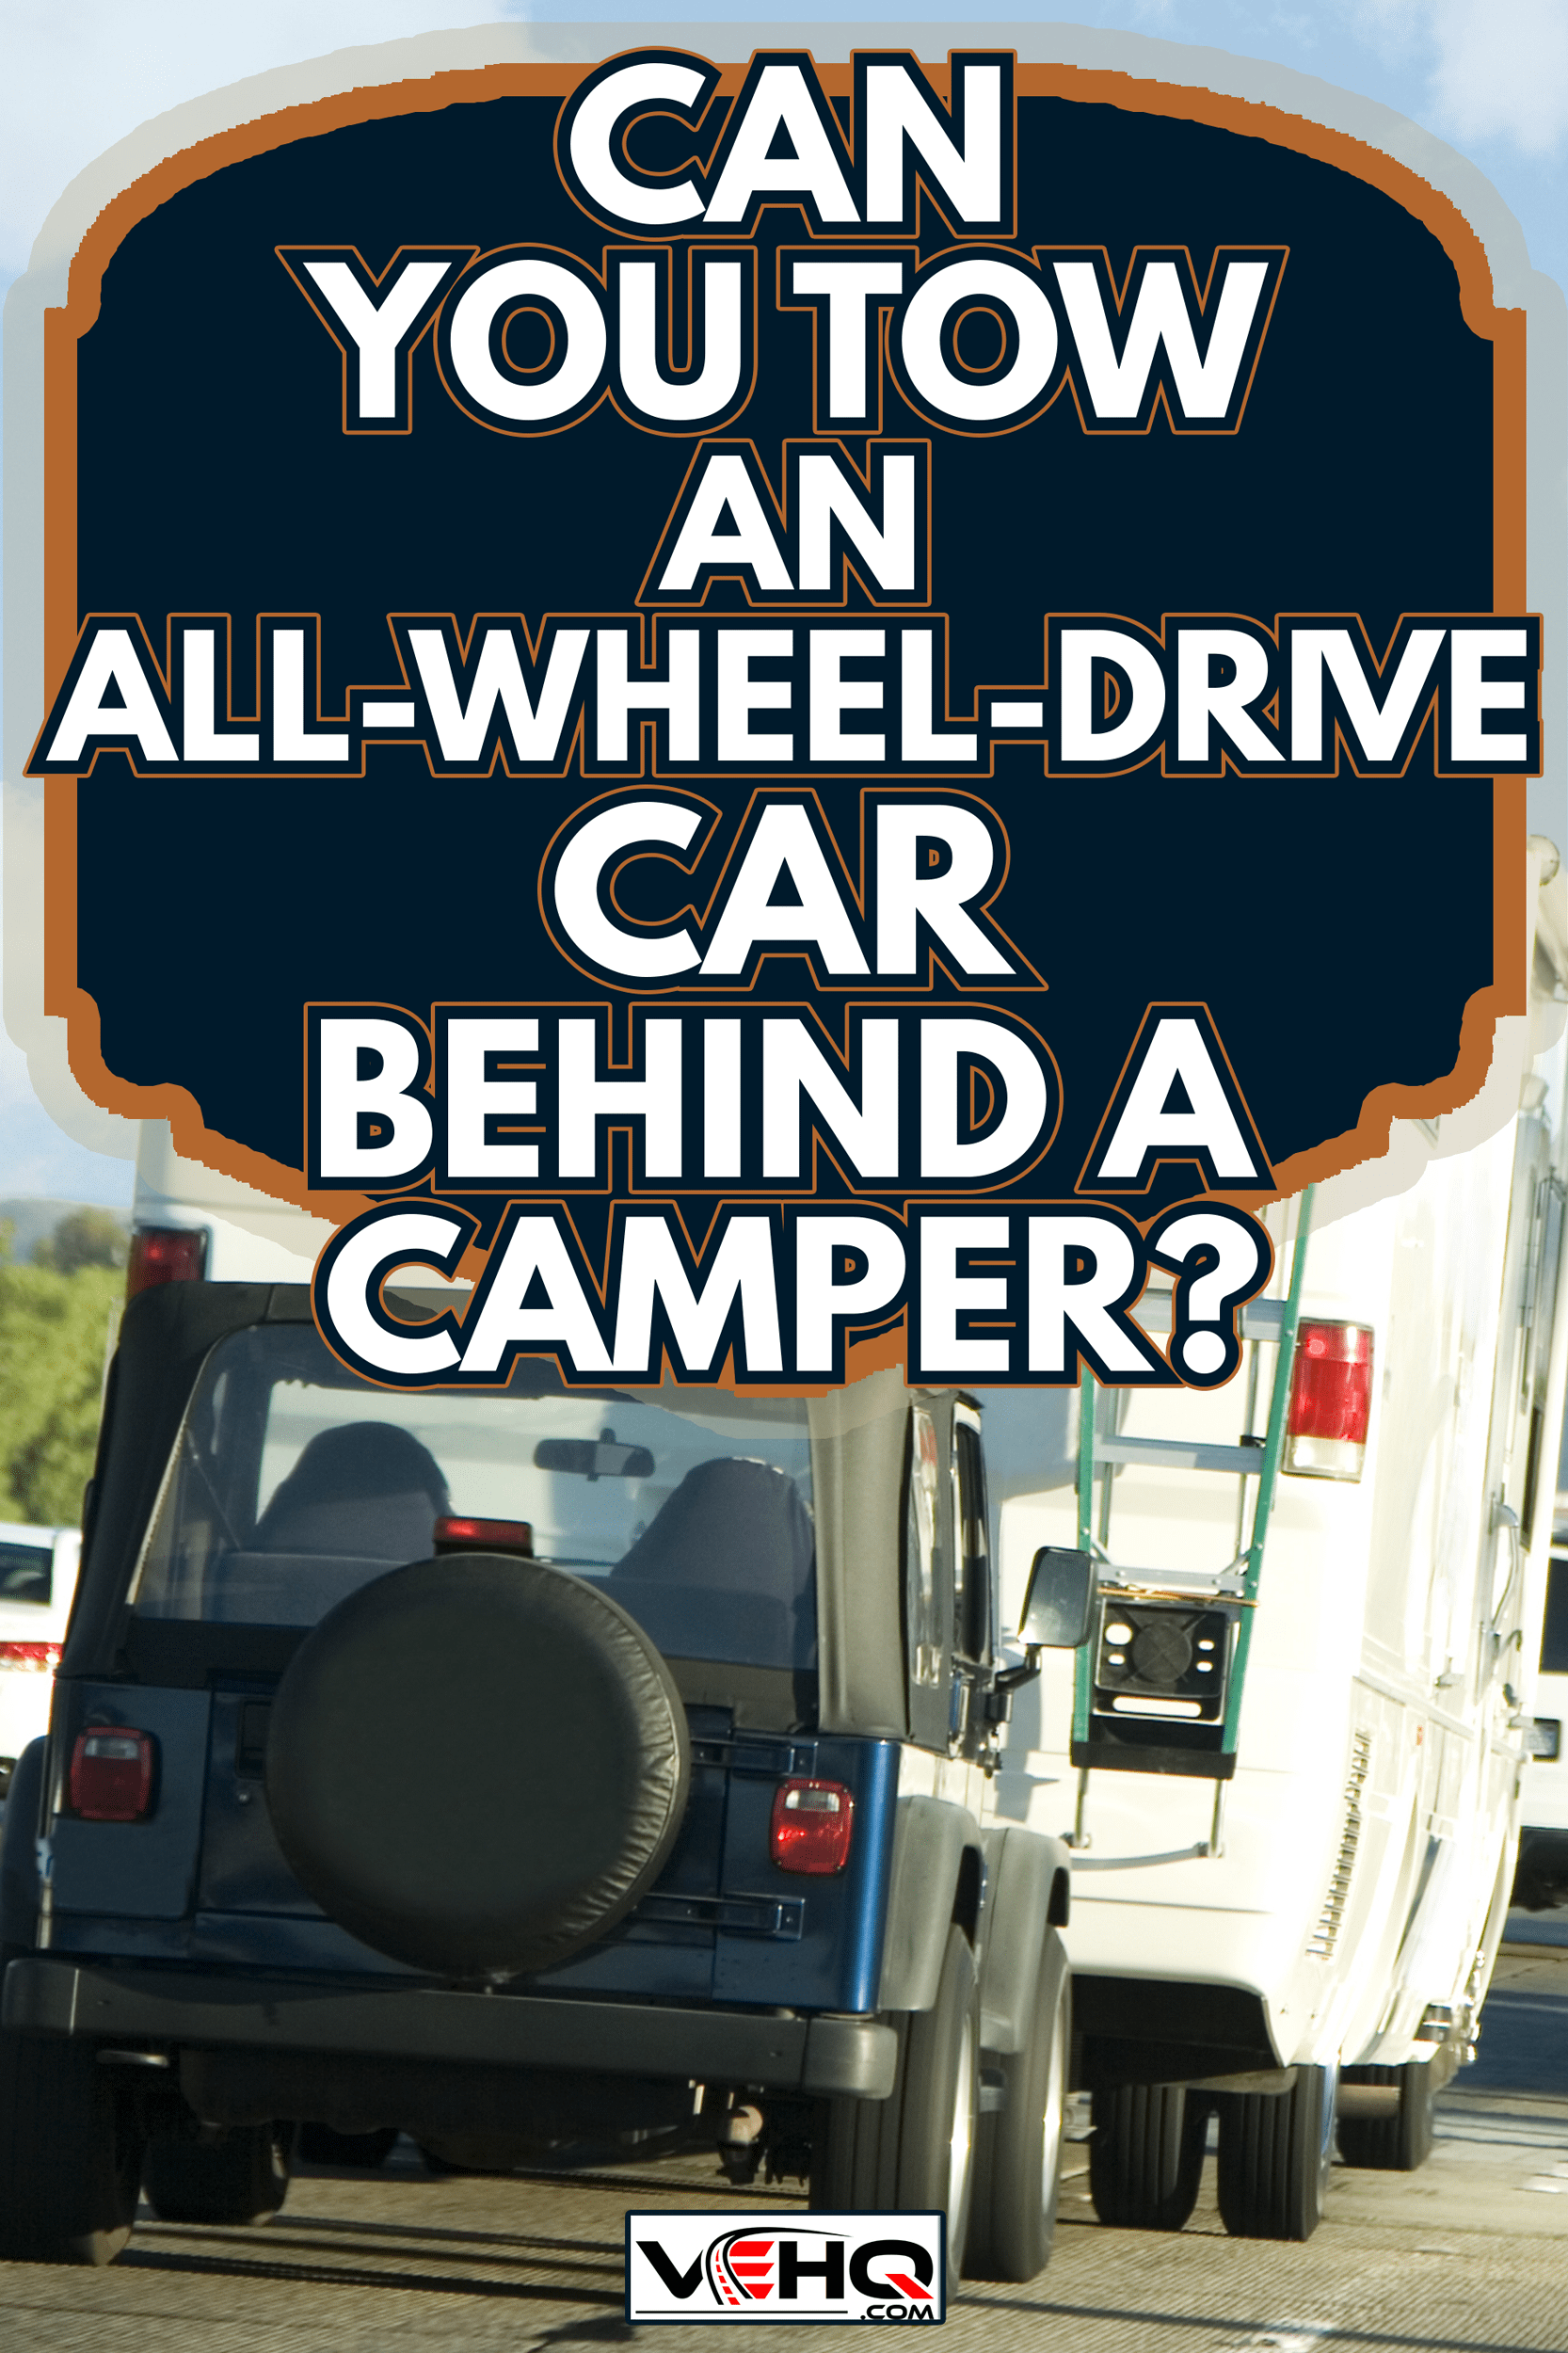 RV trip - Can You Tow An All-Wheel-Drive Car Behind A Camper